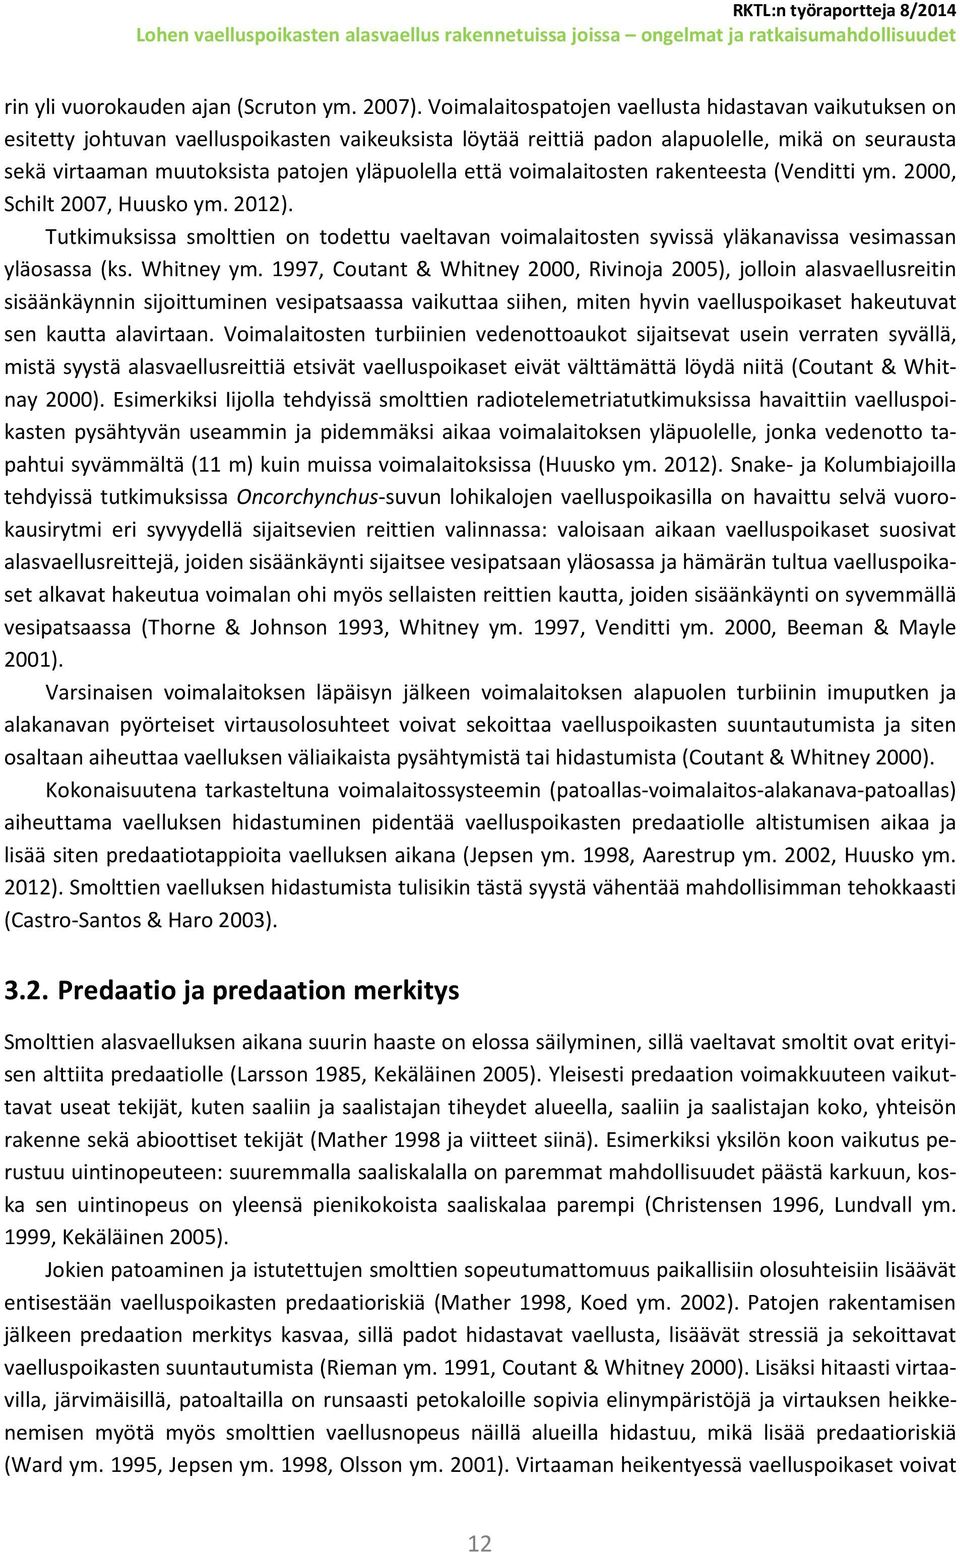 yläpuolella että voimalaitosten rakenteesta (Venditti ym. 2000, Schilt 2007, Huusko ym. 2012).